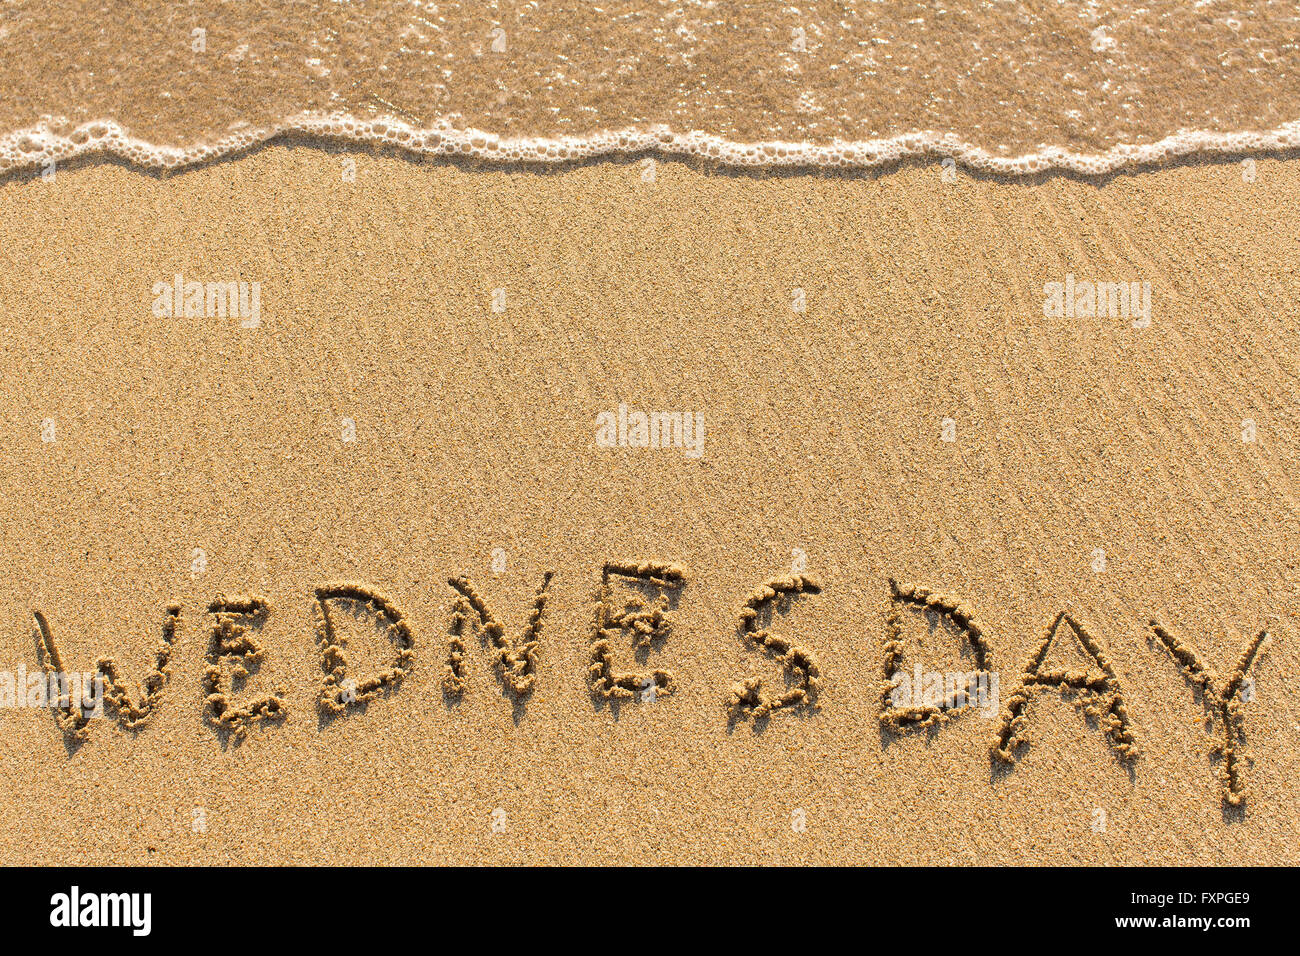 Mercoledì - tratto della mano sulla spiaggia di sabbia, morbide onde da surf. Foto Stock